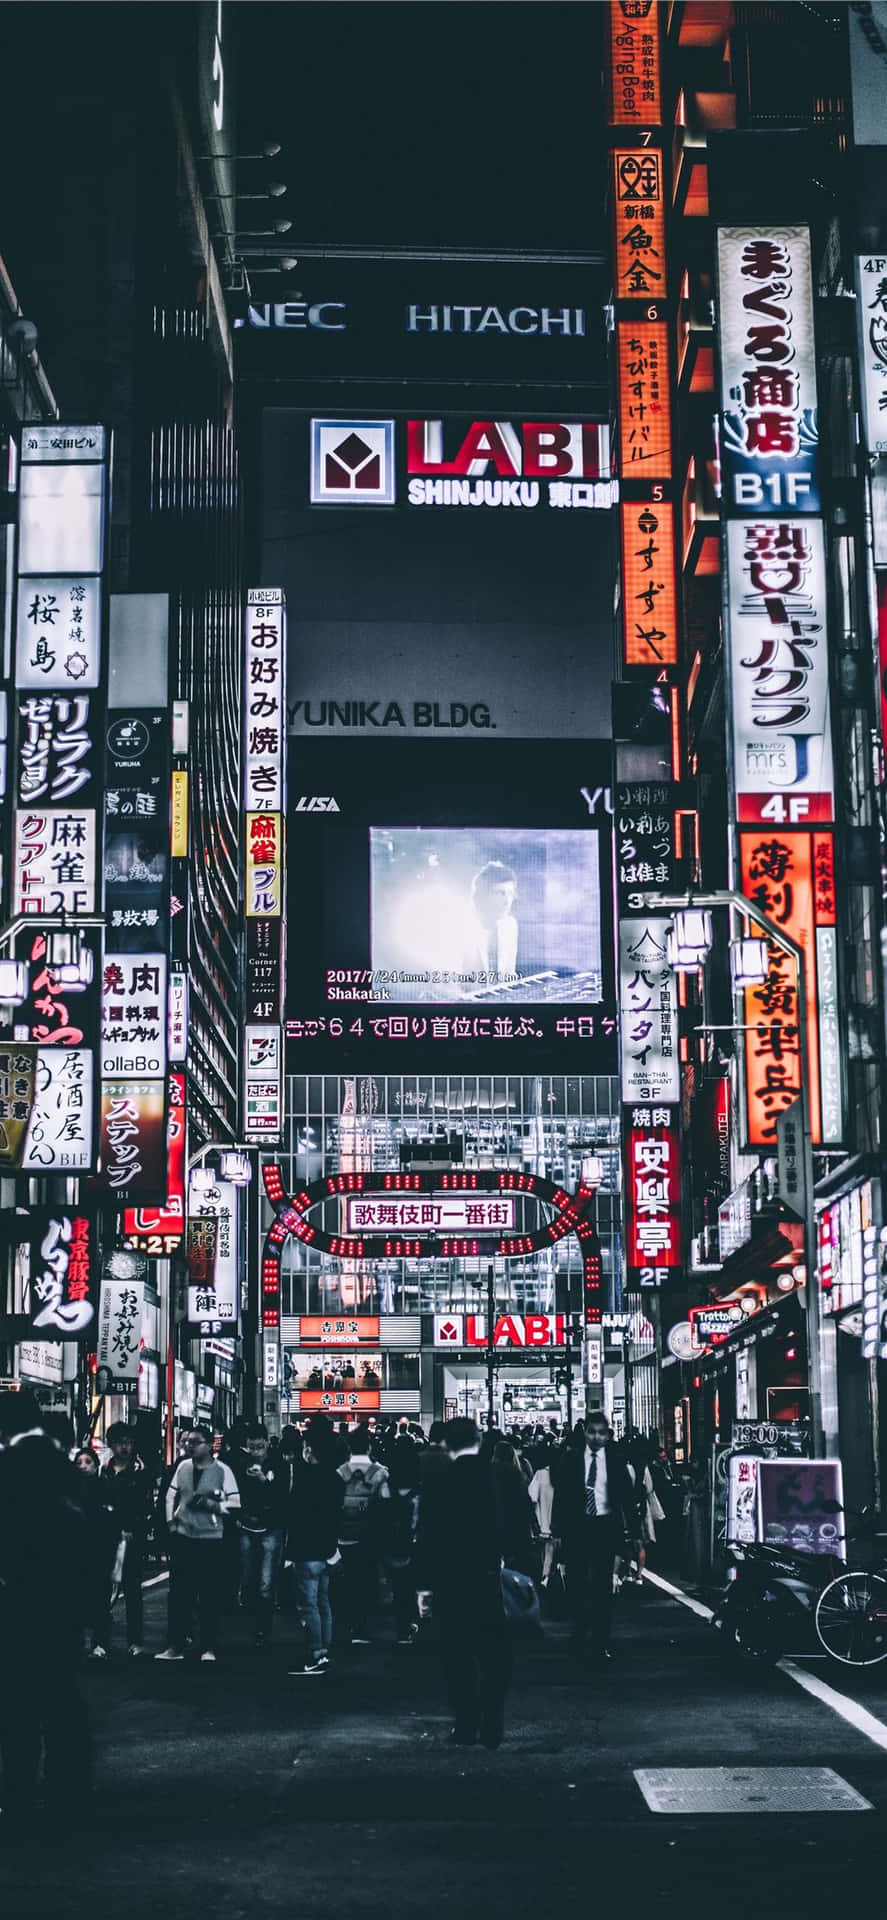 Enkvällspromenad Genom Gatorna I Det Mörka Japan. Wallpaper